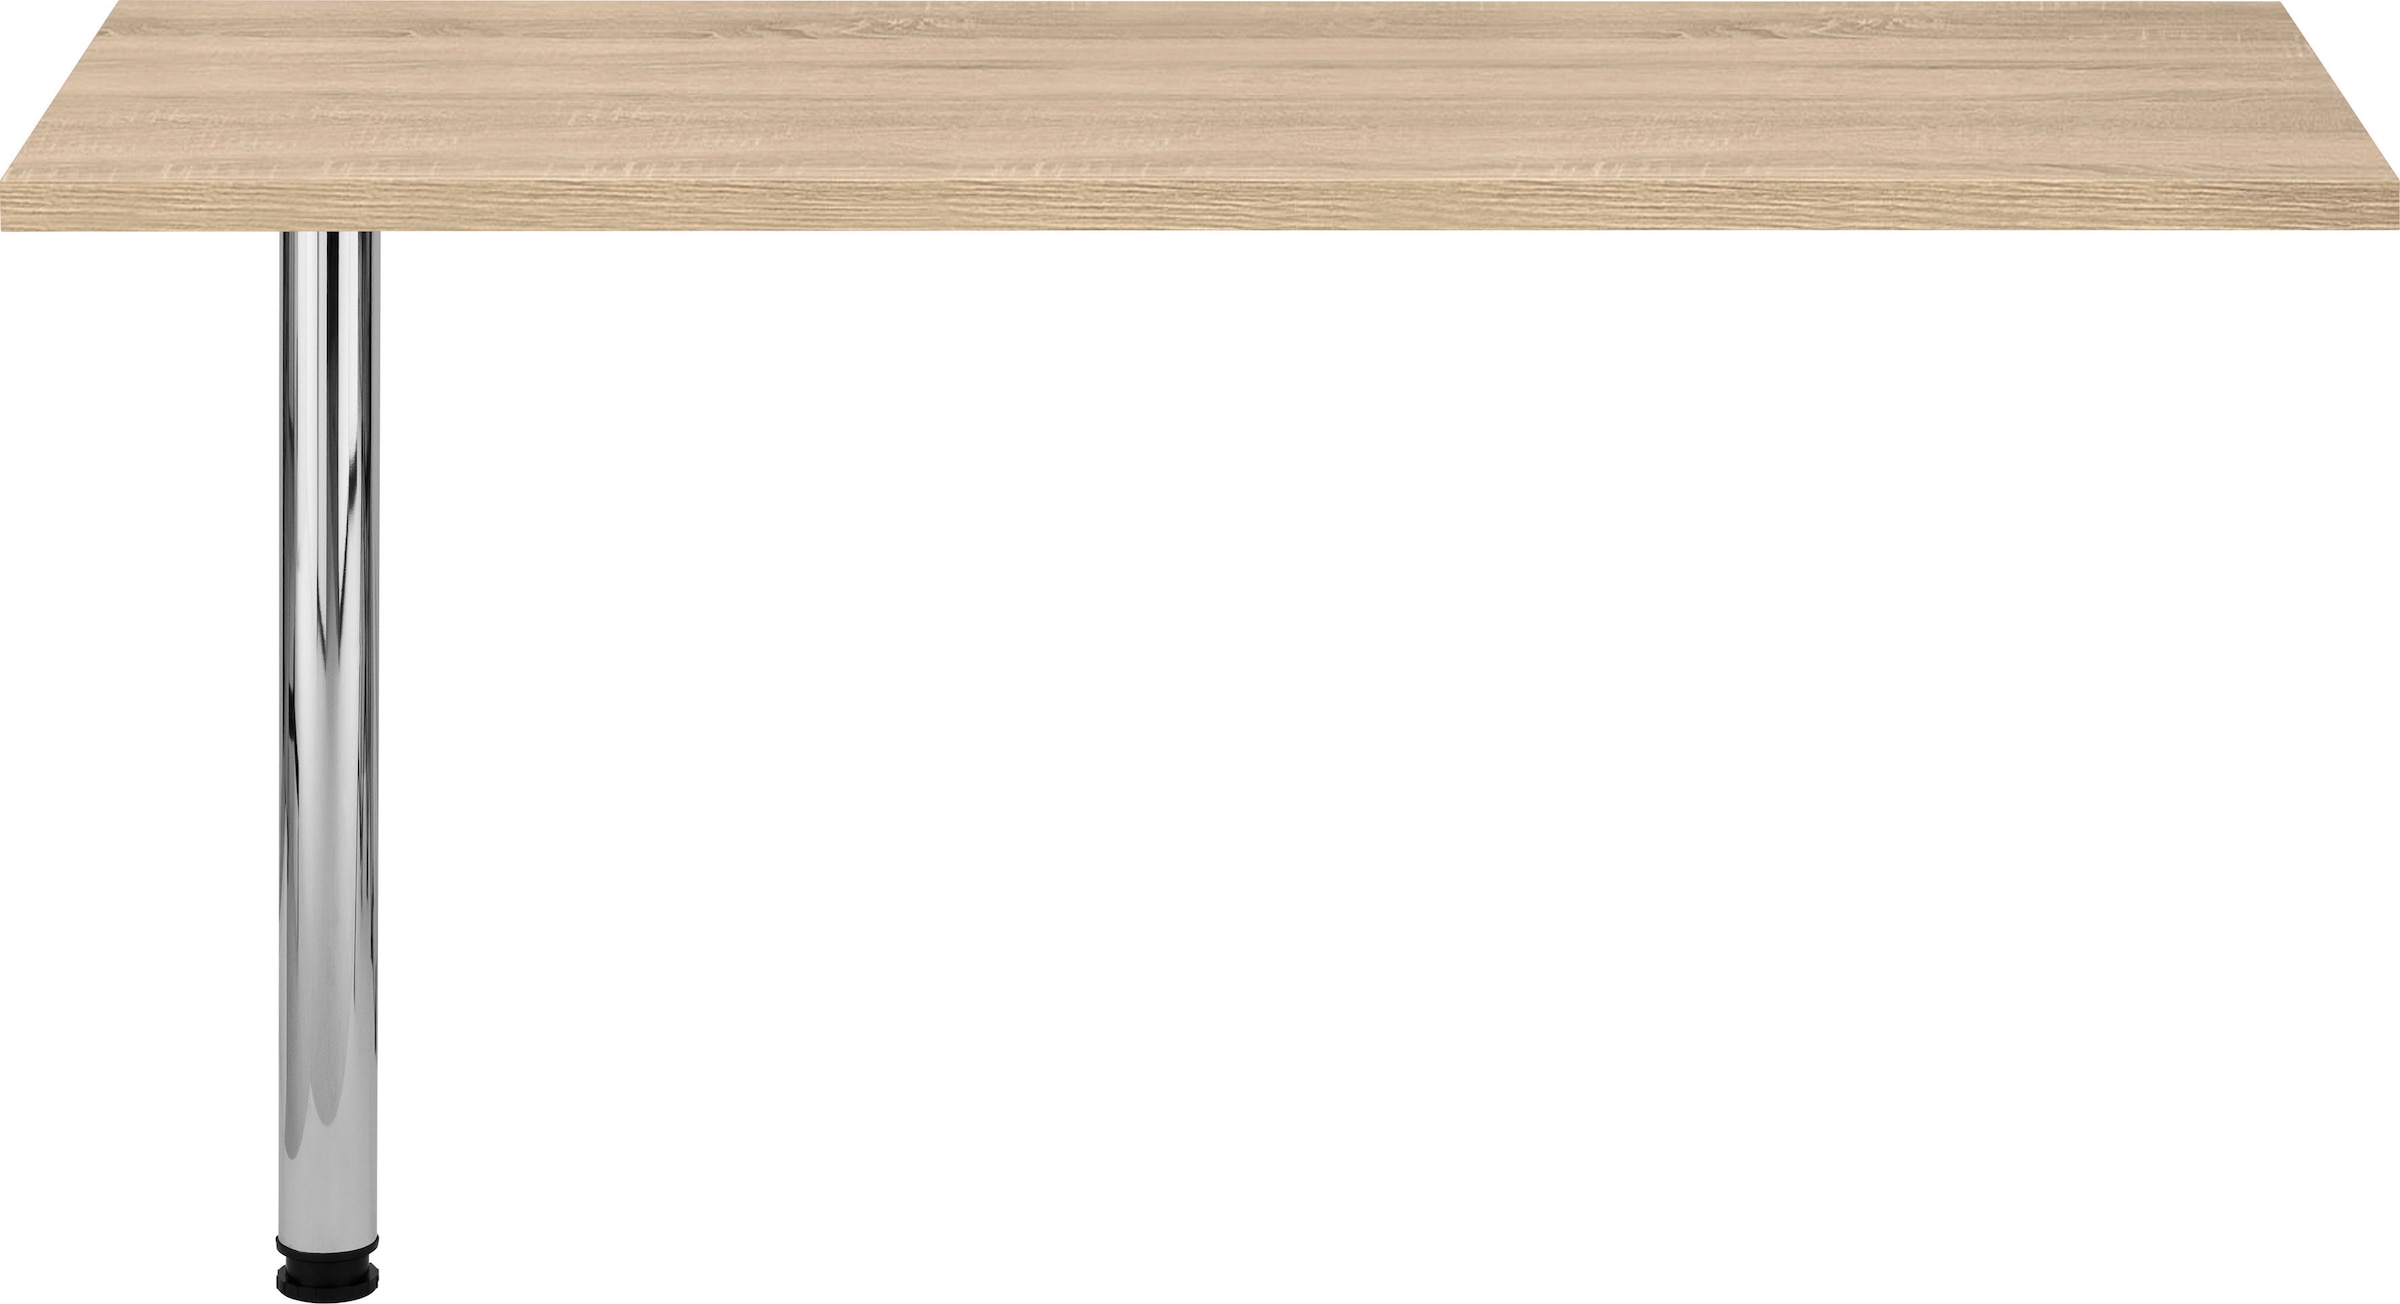 HELD MÖBEL Tresentisch »Virginia«, 138 cm breit, ideal für kleine Küchen  online kaufen